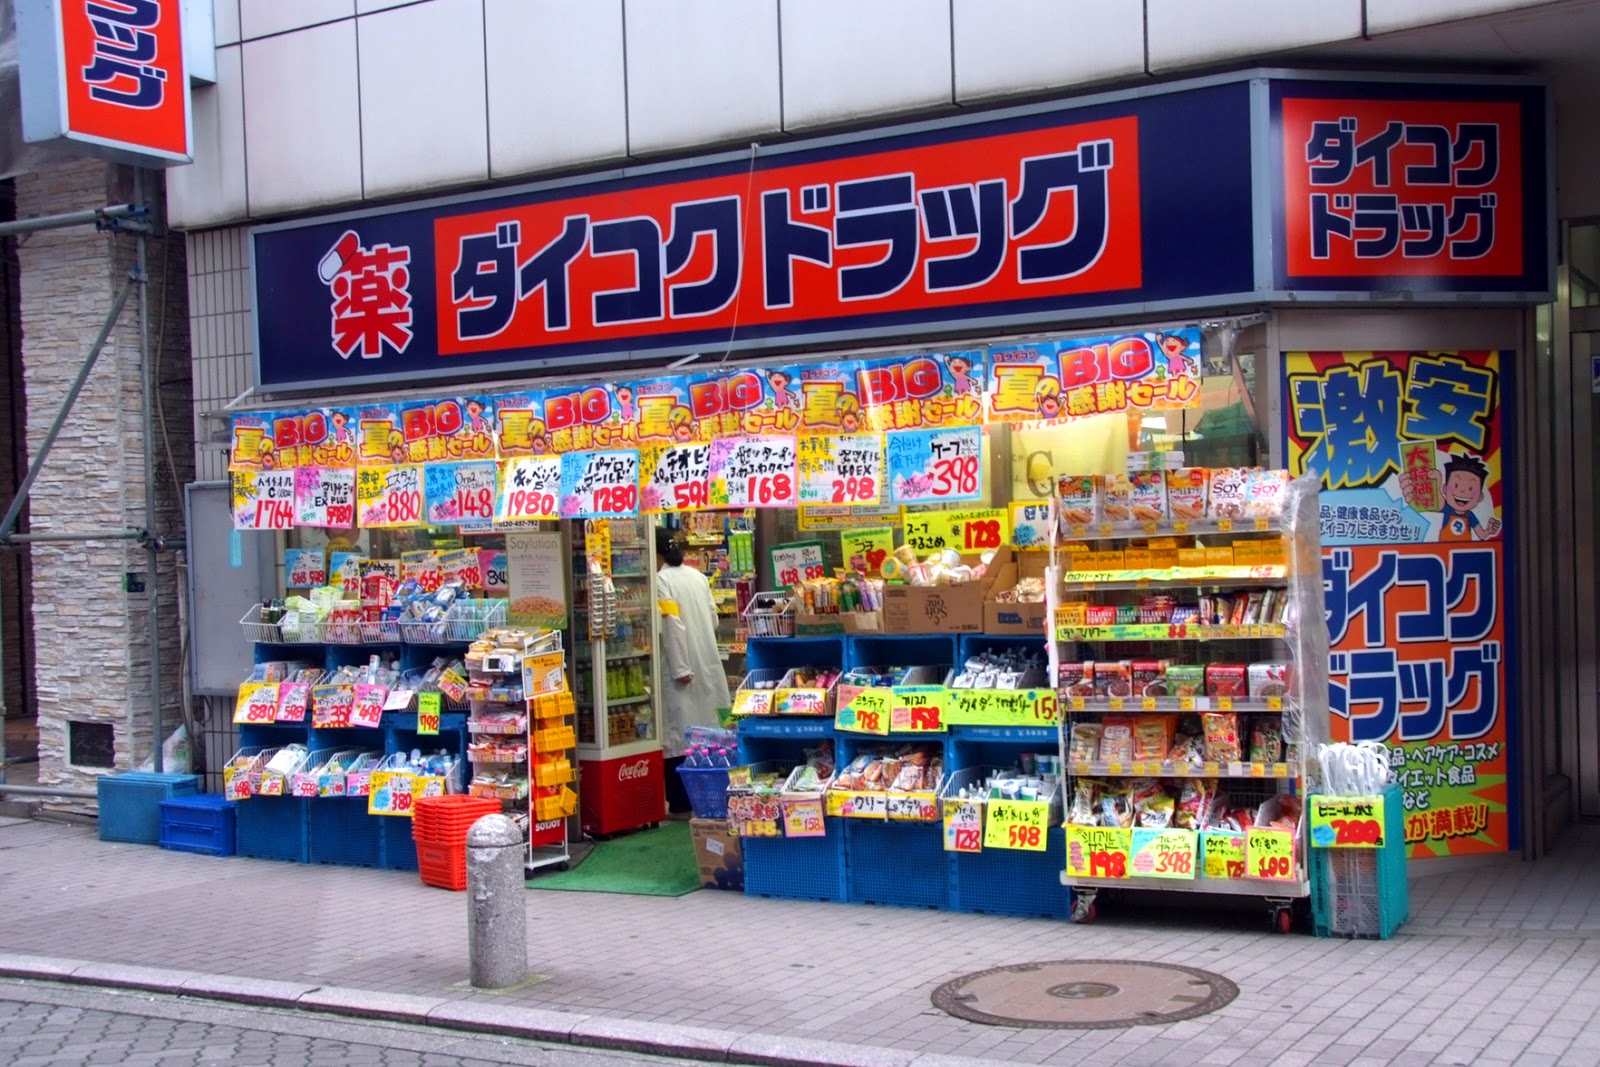 ordering Japanese goods